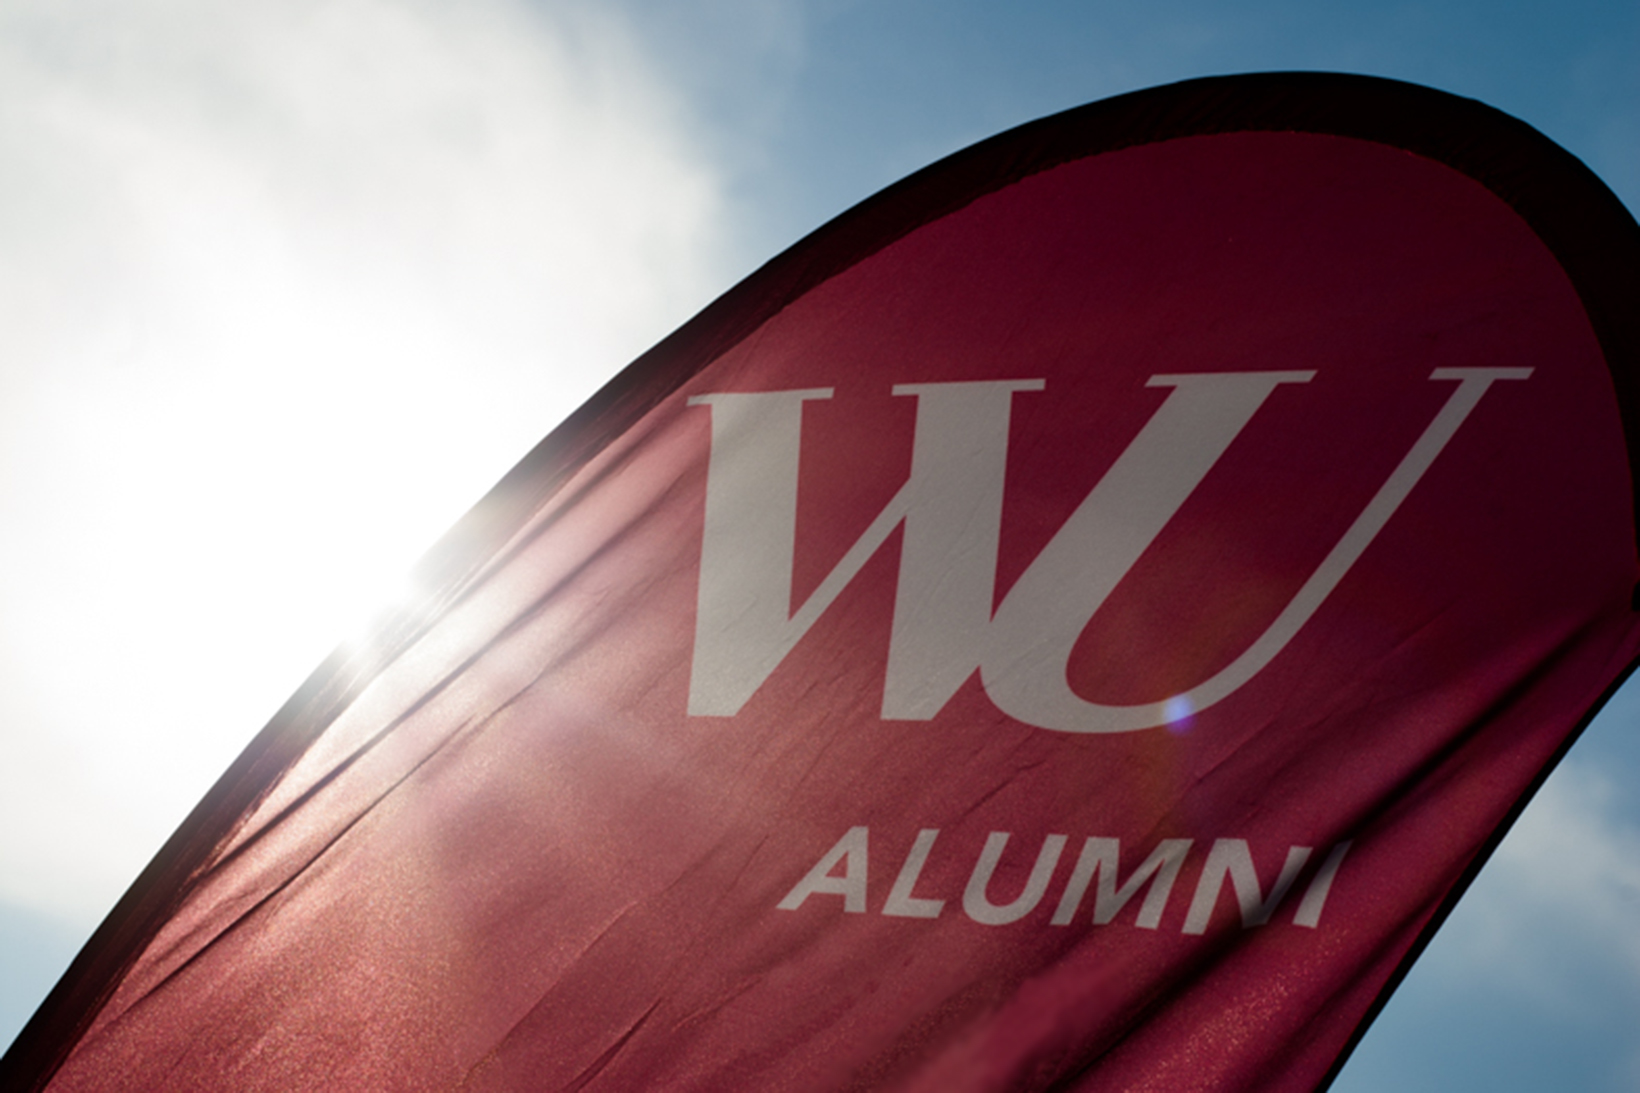 Fahne des WU Alumni Clubs (c) Xenia Trampusch